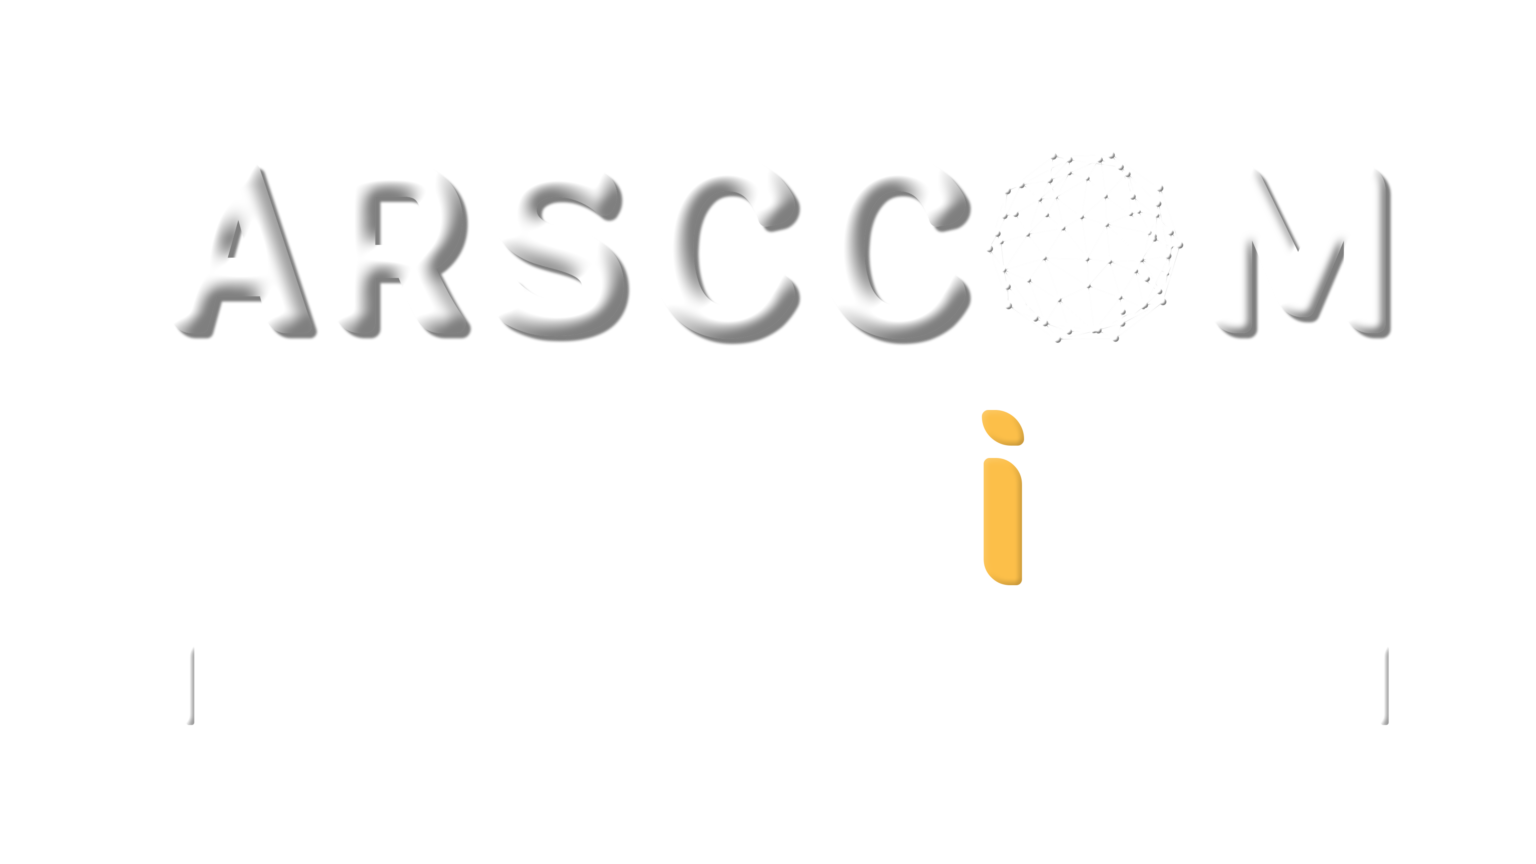 Arsccom Learning Logo